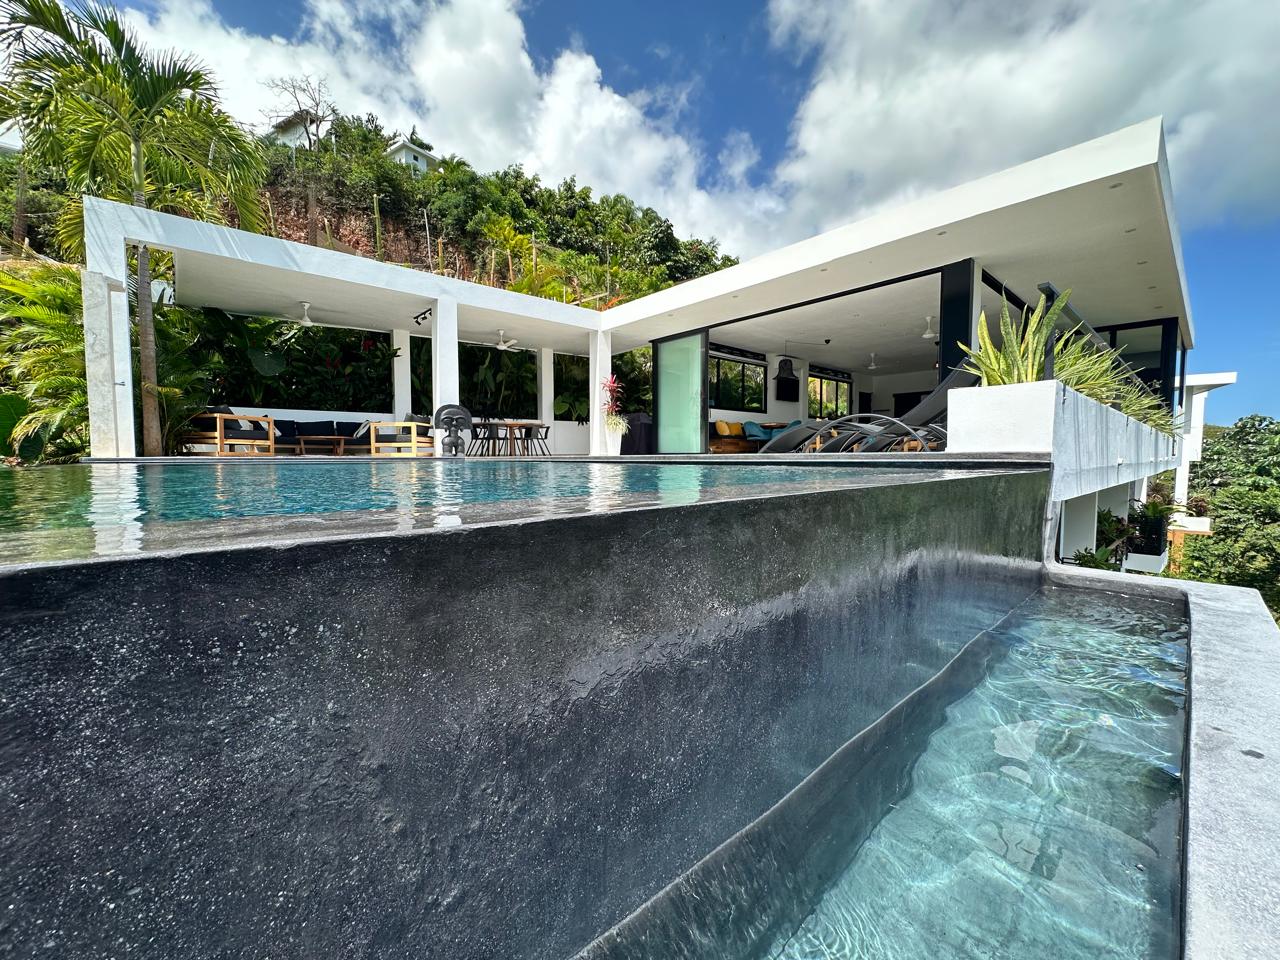 Splendid 4-bedroom villa with ocean vista - Las Terrenas Real Estate - Ocean Edge Dominican Republic (10)